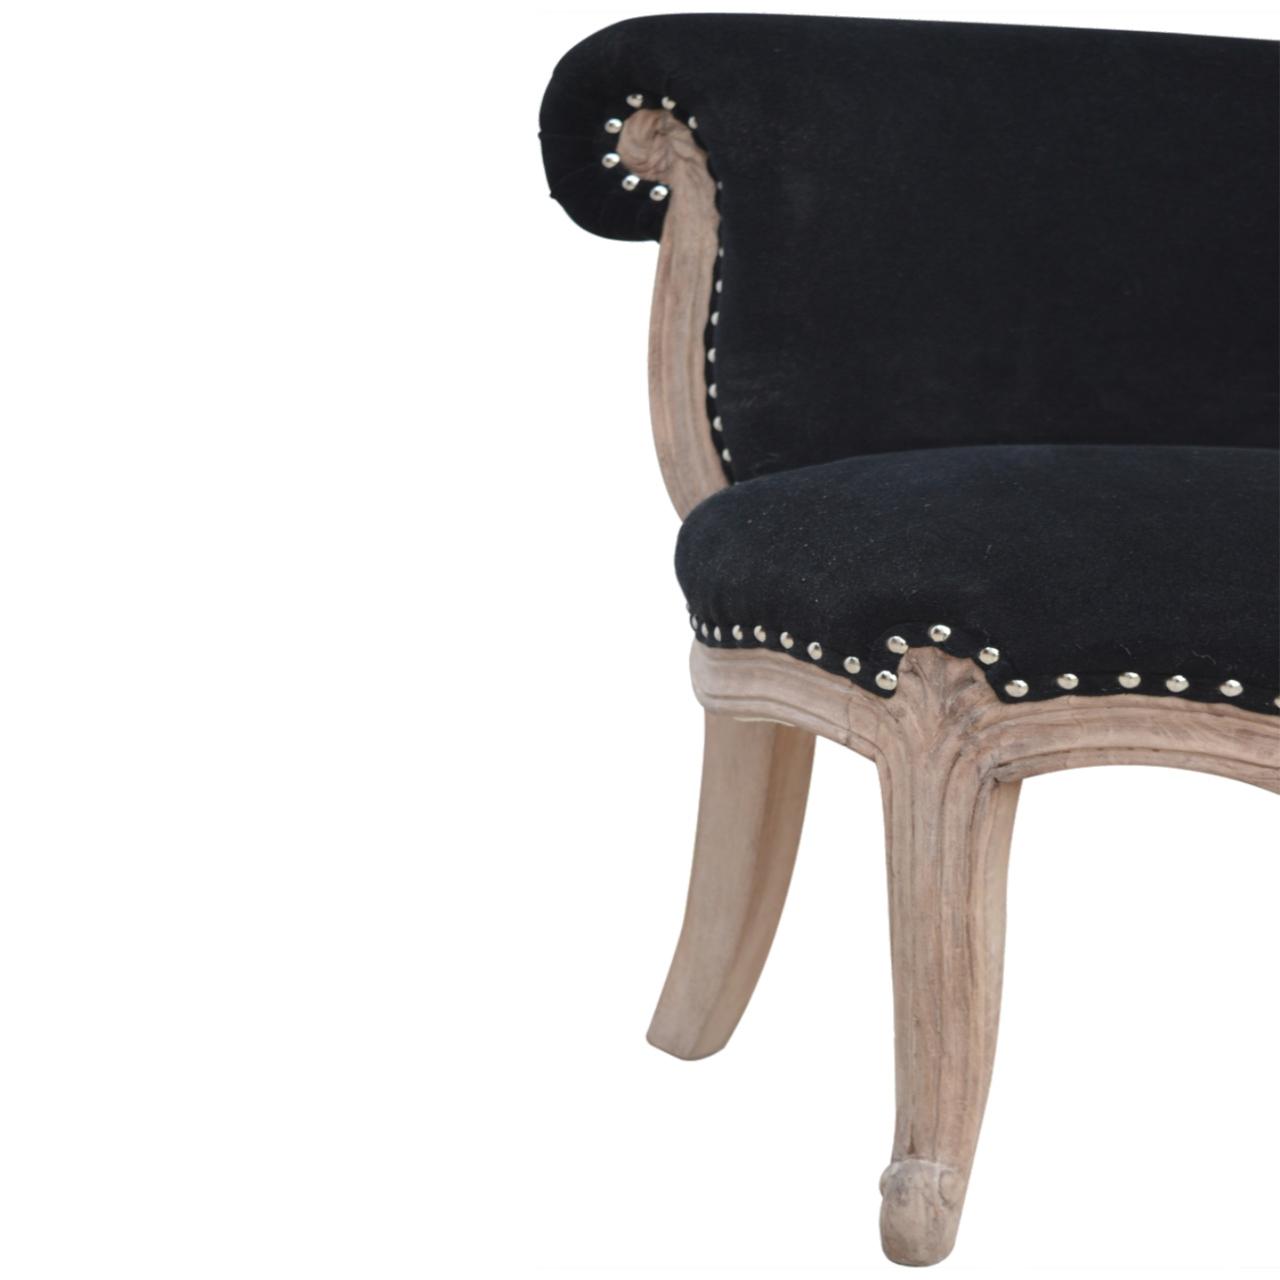 Black Velvet Studded Chair